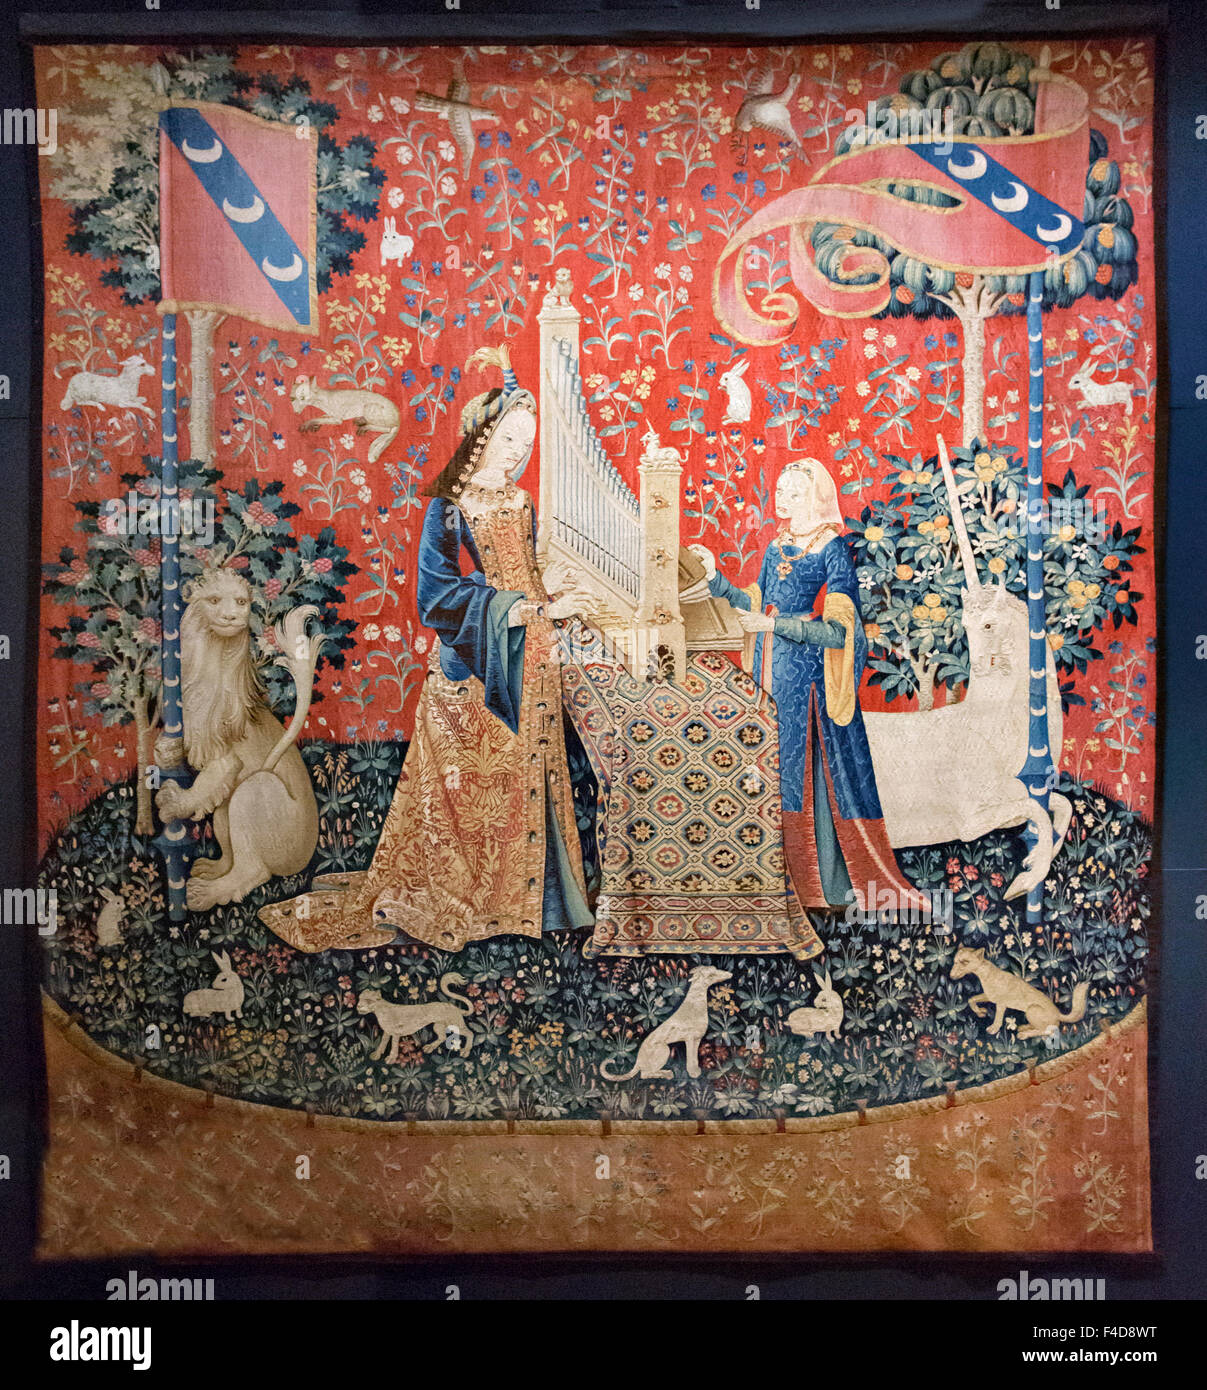 L'Europa, Francia, Parigi. Uno dei sei Lady e la Unicorn arazzi nel museo di Cluny del Medioevo. Essa risale a circa il 1500 CE e riguarda il senso dell'udito. Foto Stock